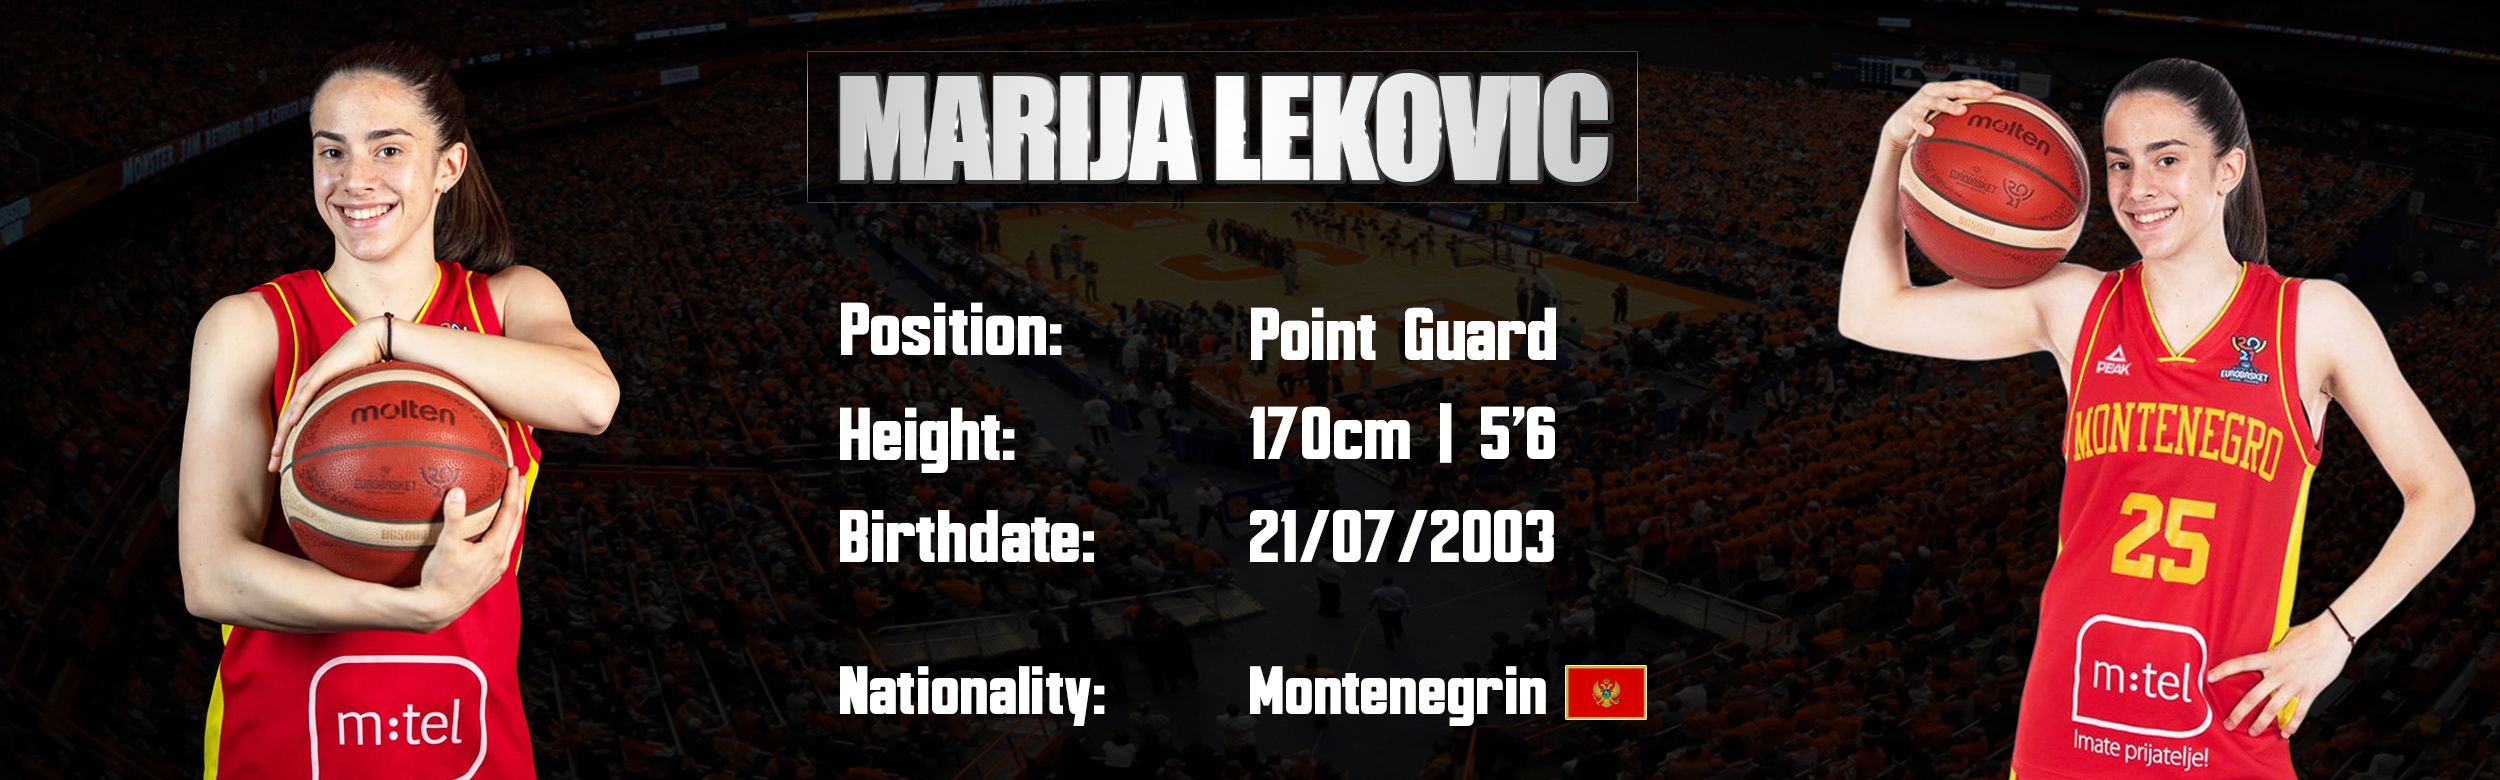 Marija Lekovic